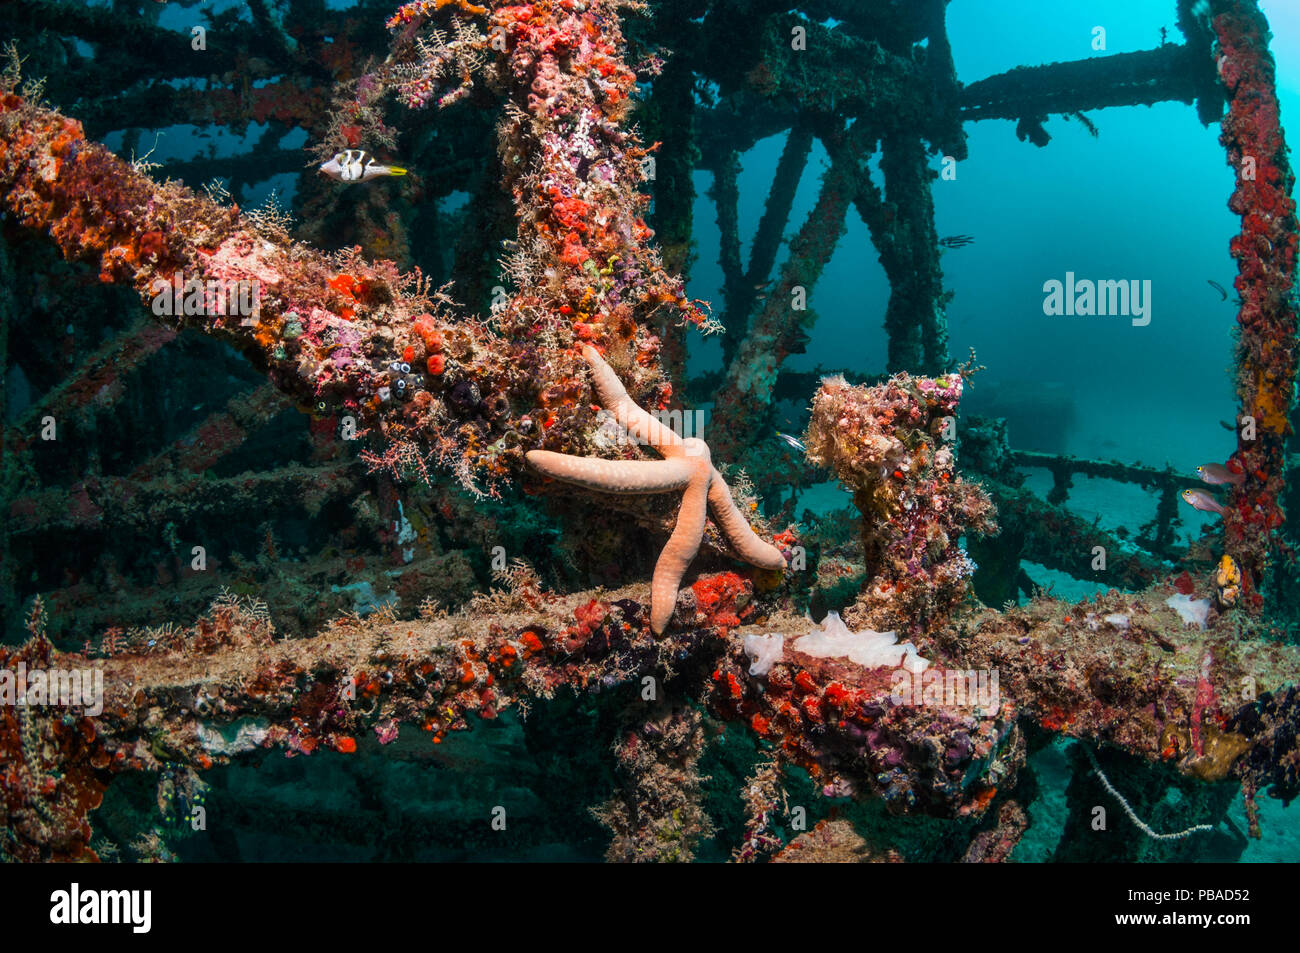 Les récifs coralliens artificiels site avec une étoile de mer linckia laevigata (bleu) Mabul, la Malaisie. Banque D'Images